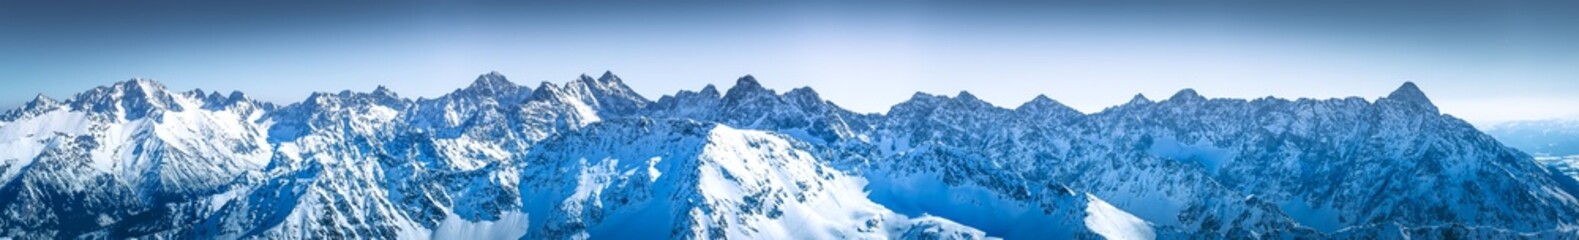 Fototapeta śnieg góra panoramiczny krajobraz pejzaż